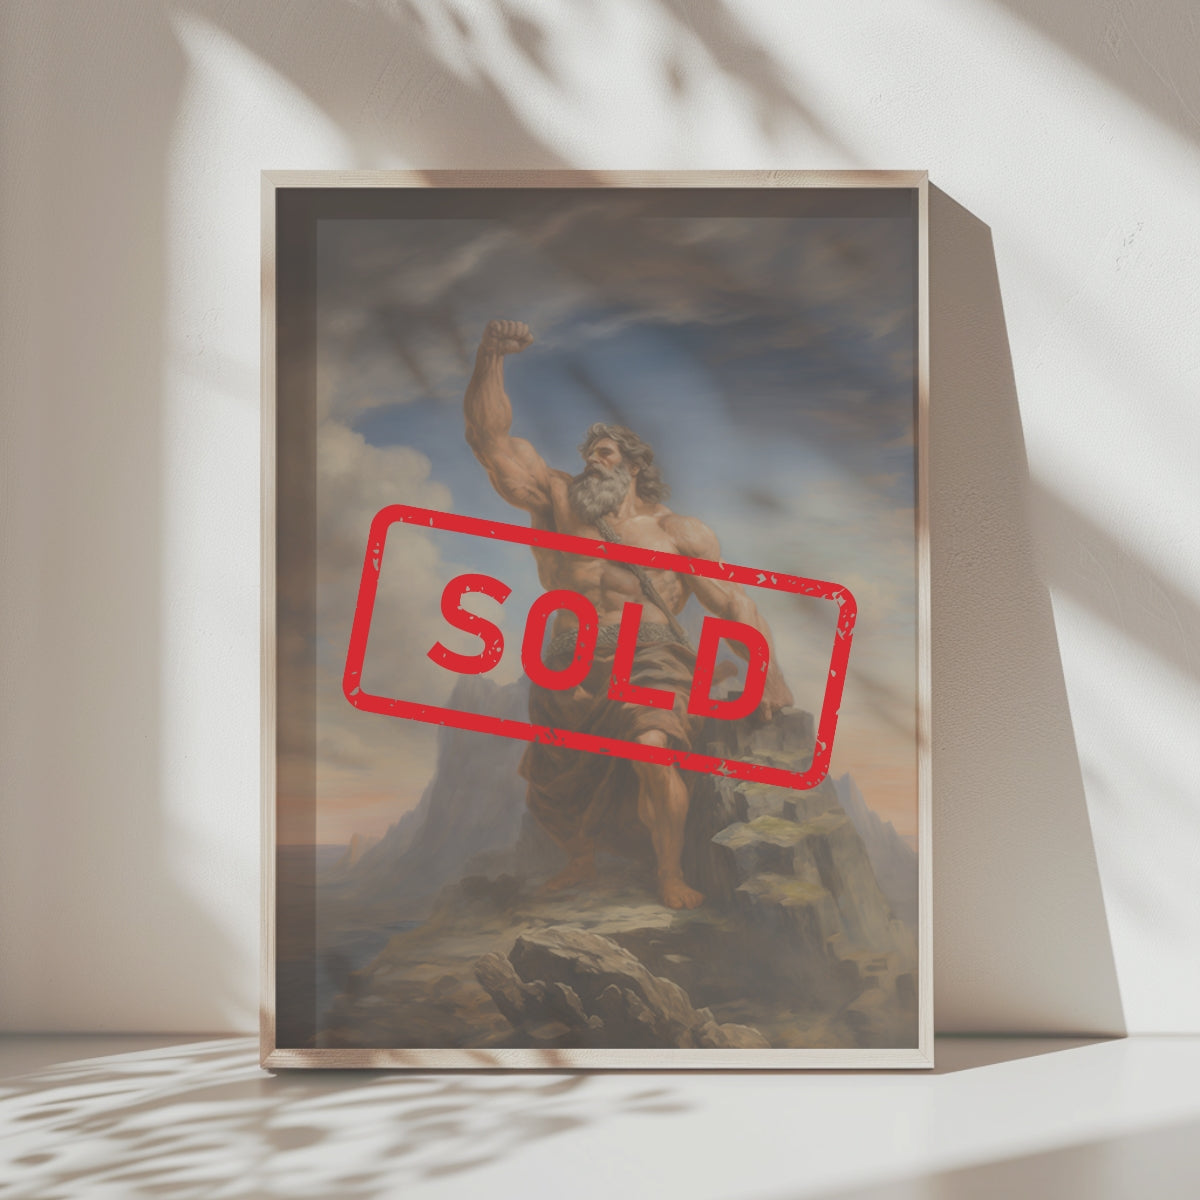 Zeus' Triumph Exclusive Painting